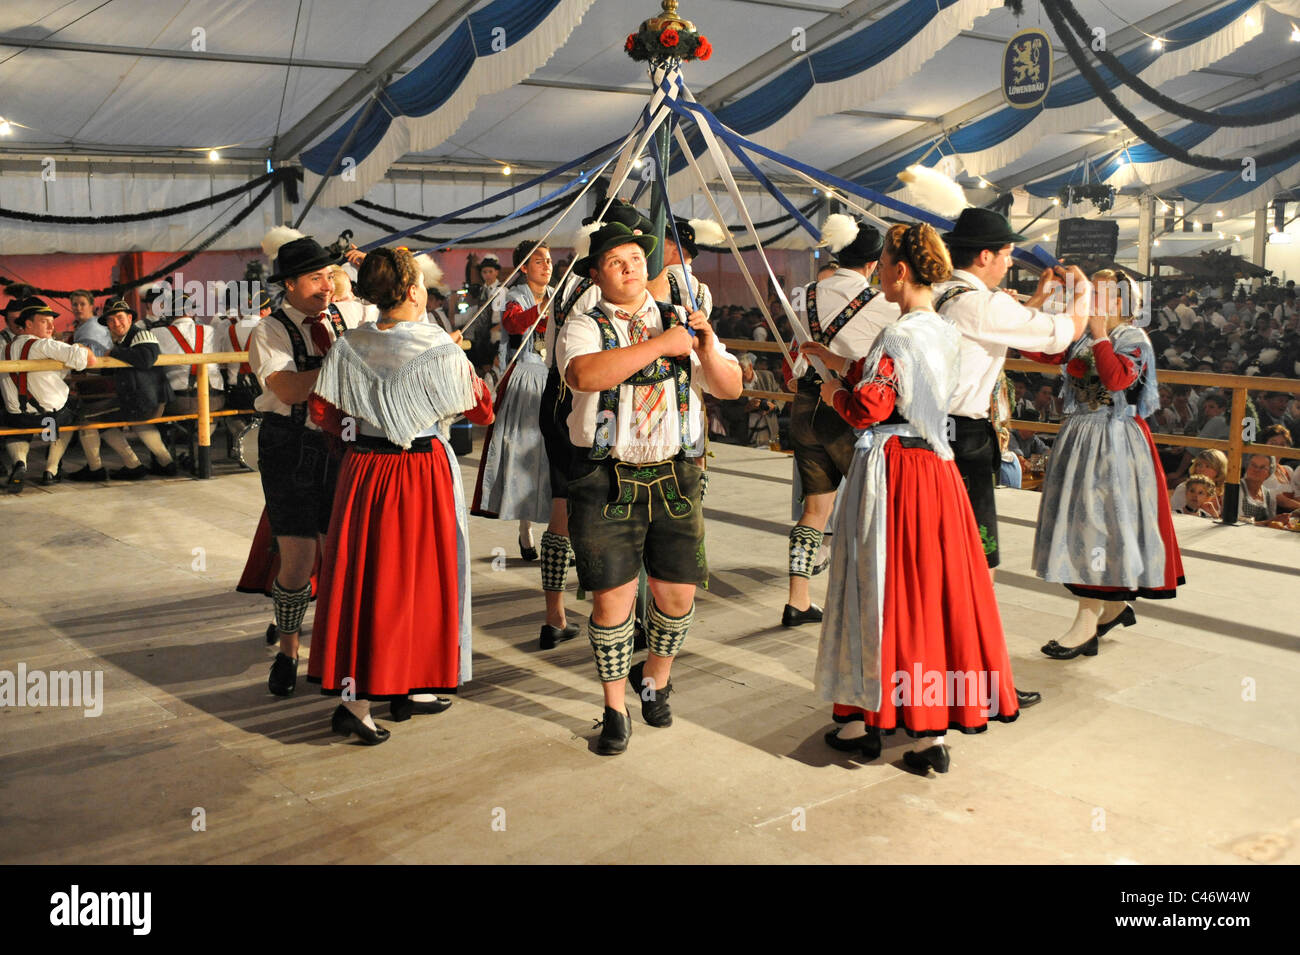 Danseur en costumes traditionnels montrent la fameuse danse "chuhplattler' en Bavière, Allemagne Banque D'Images